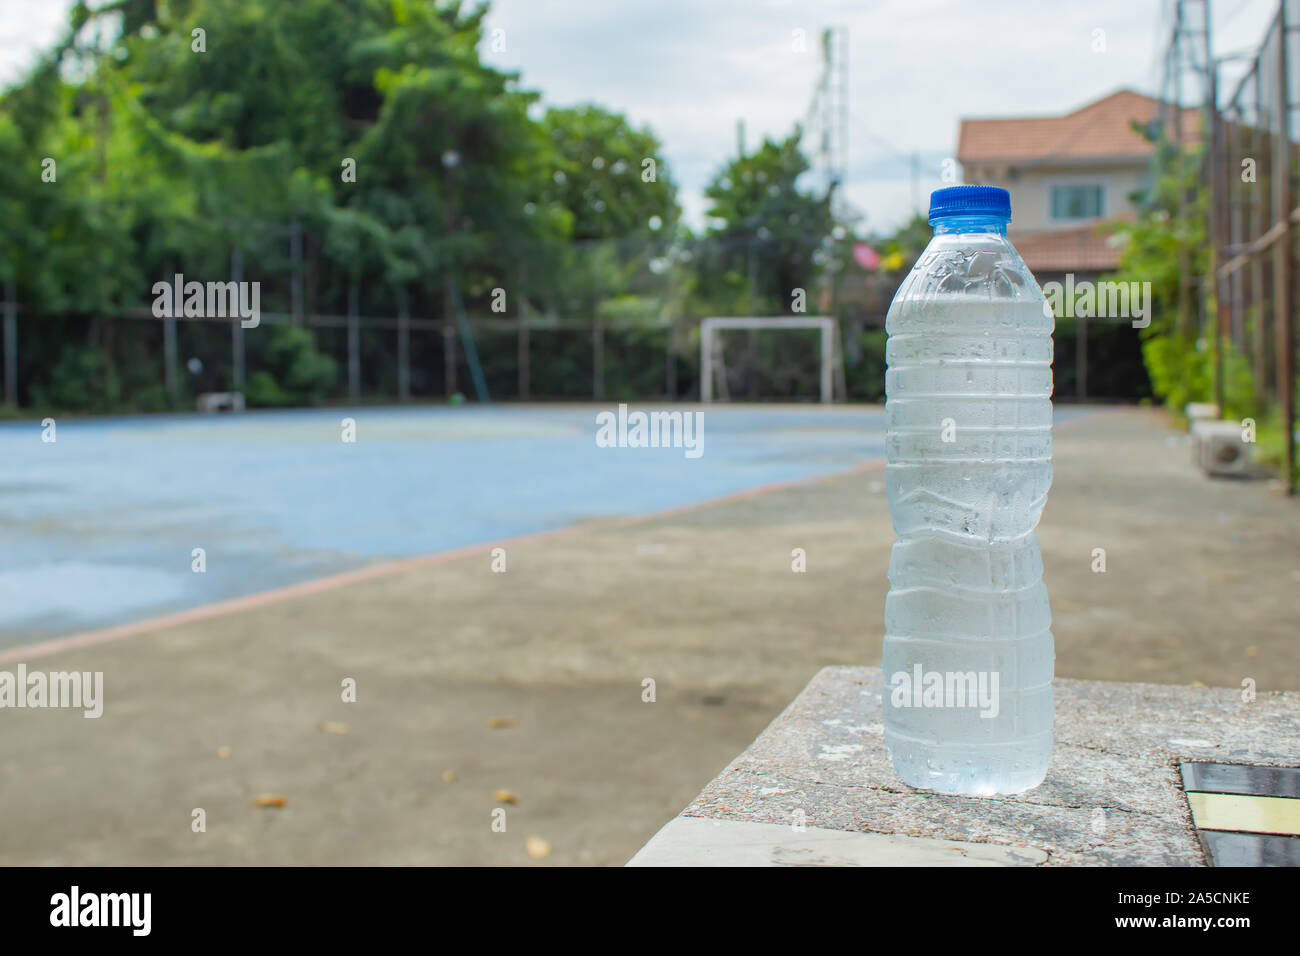 Kaltes Trinkwasser in Flaschen auf dem Tisch. In der Fußballplatz. Stockfoto